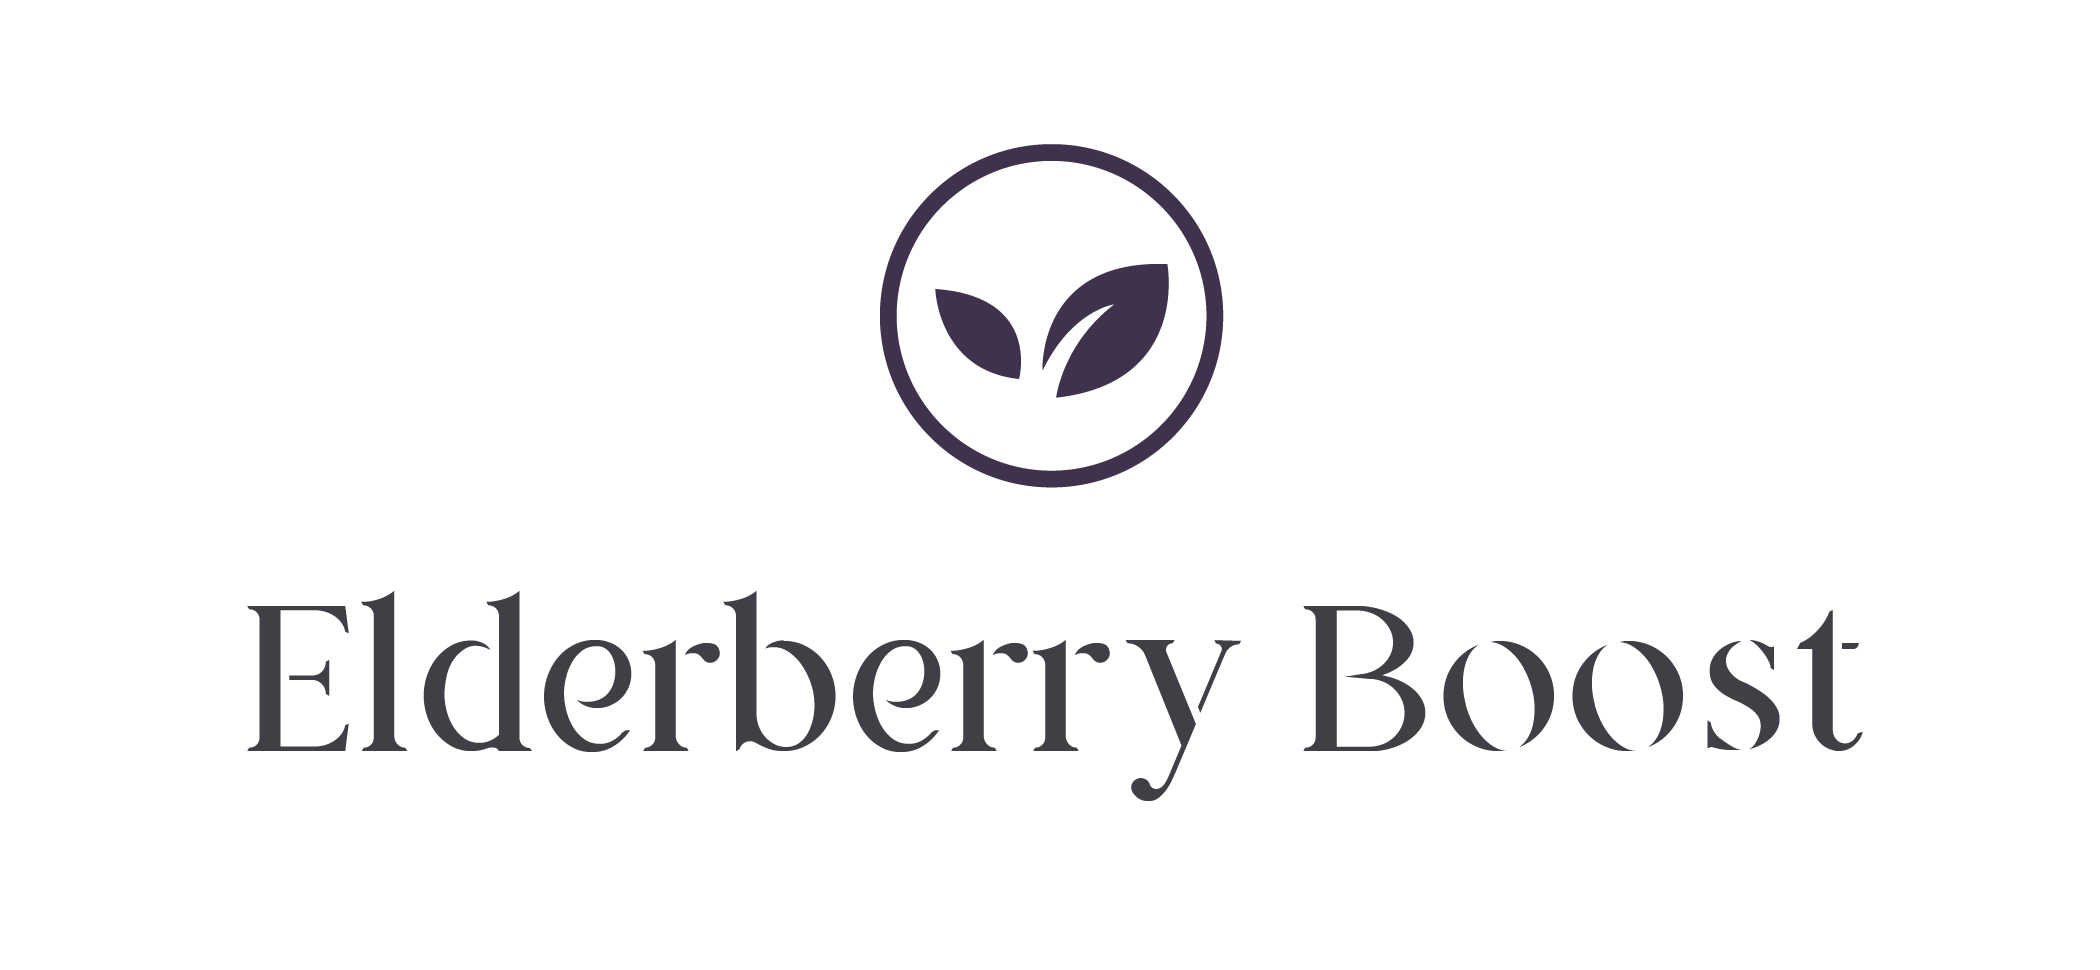 Elderberry Boost Coupons